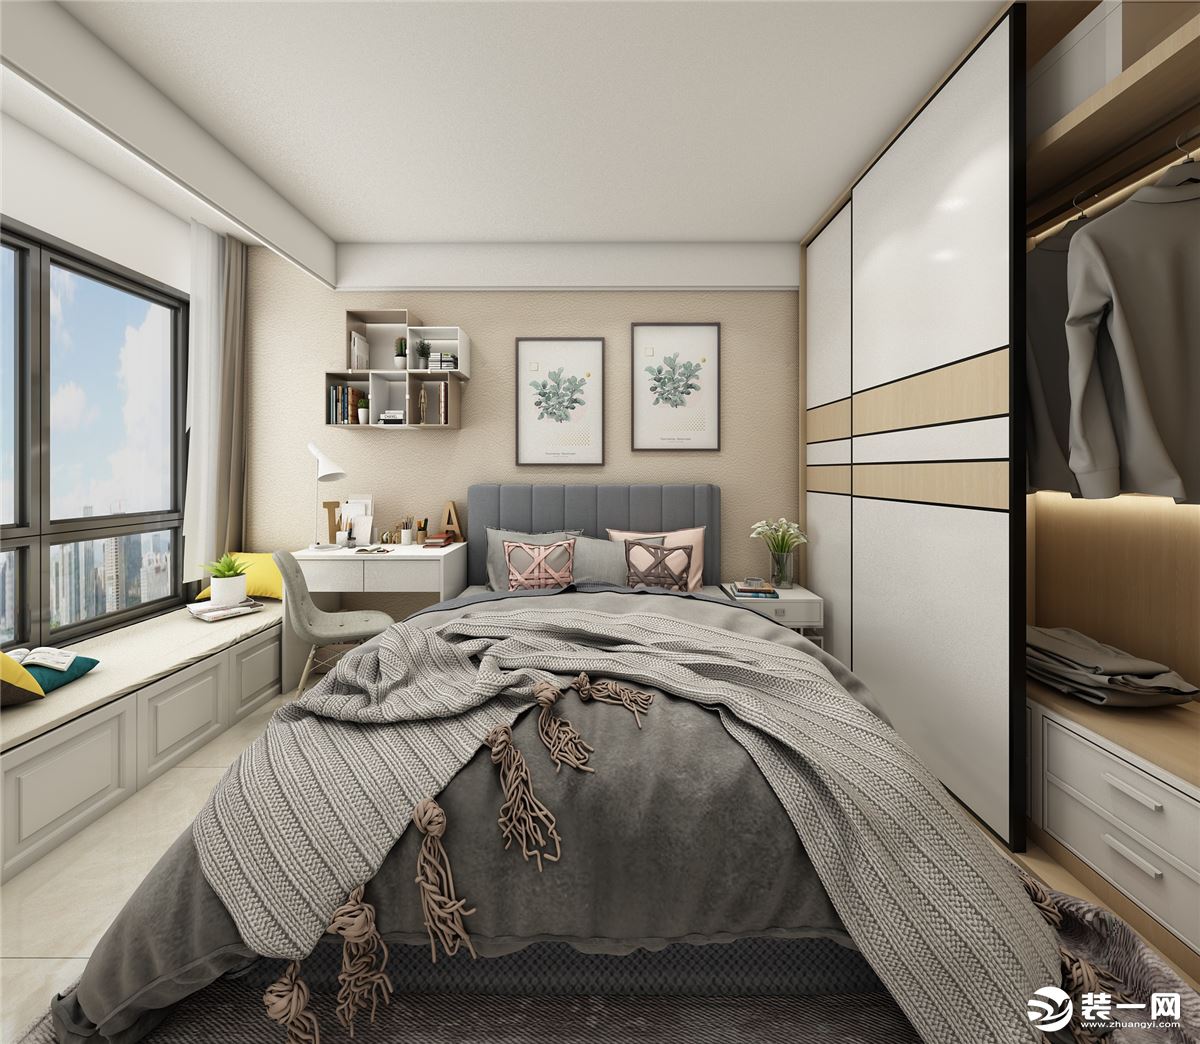 卧室的空间，结合了米色和白色的搭配，增加层次感，两边柜子的设计也给主人家带来了居家实用性。